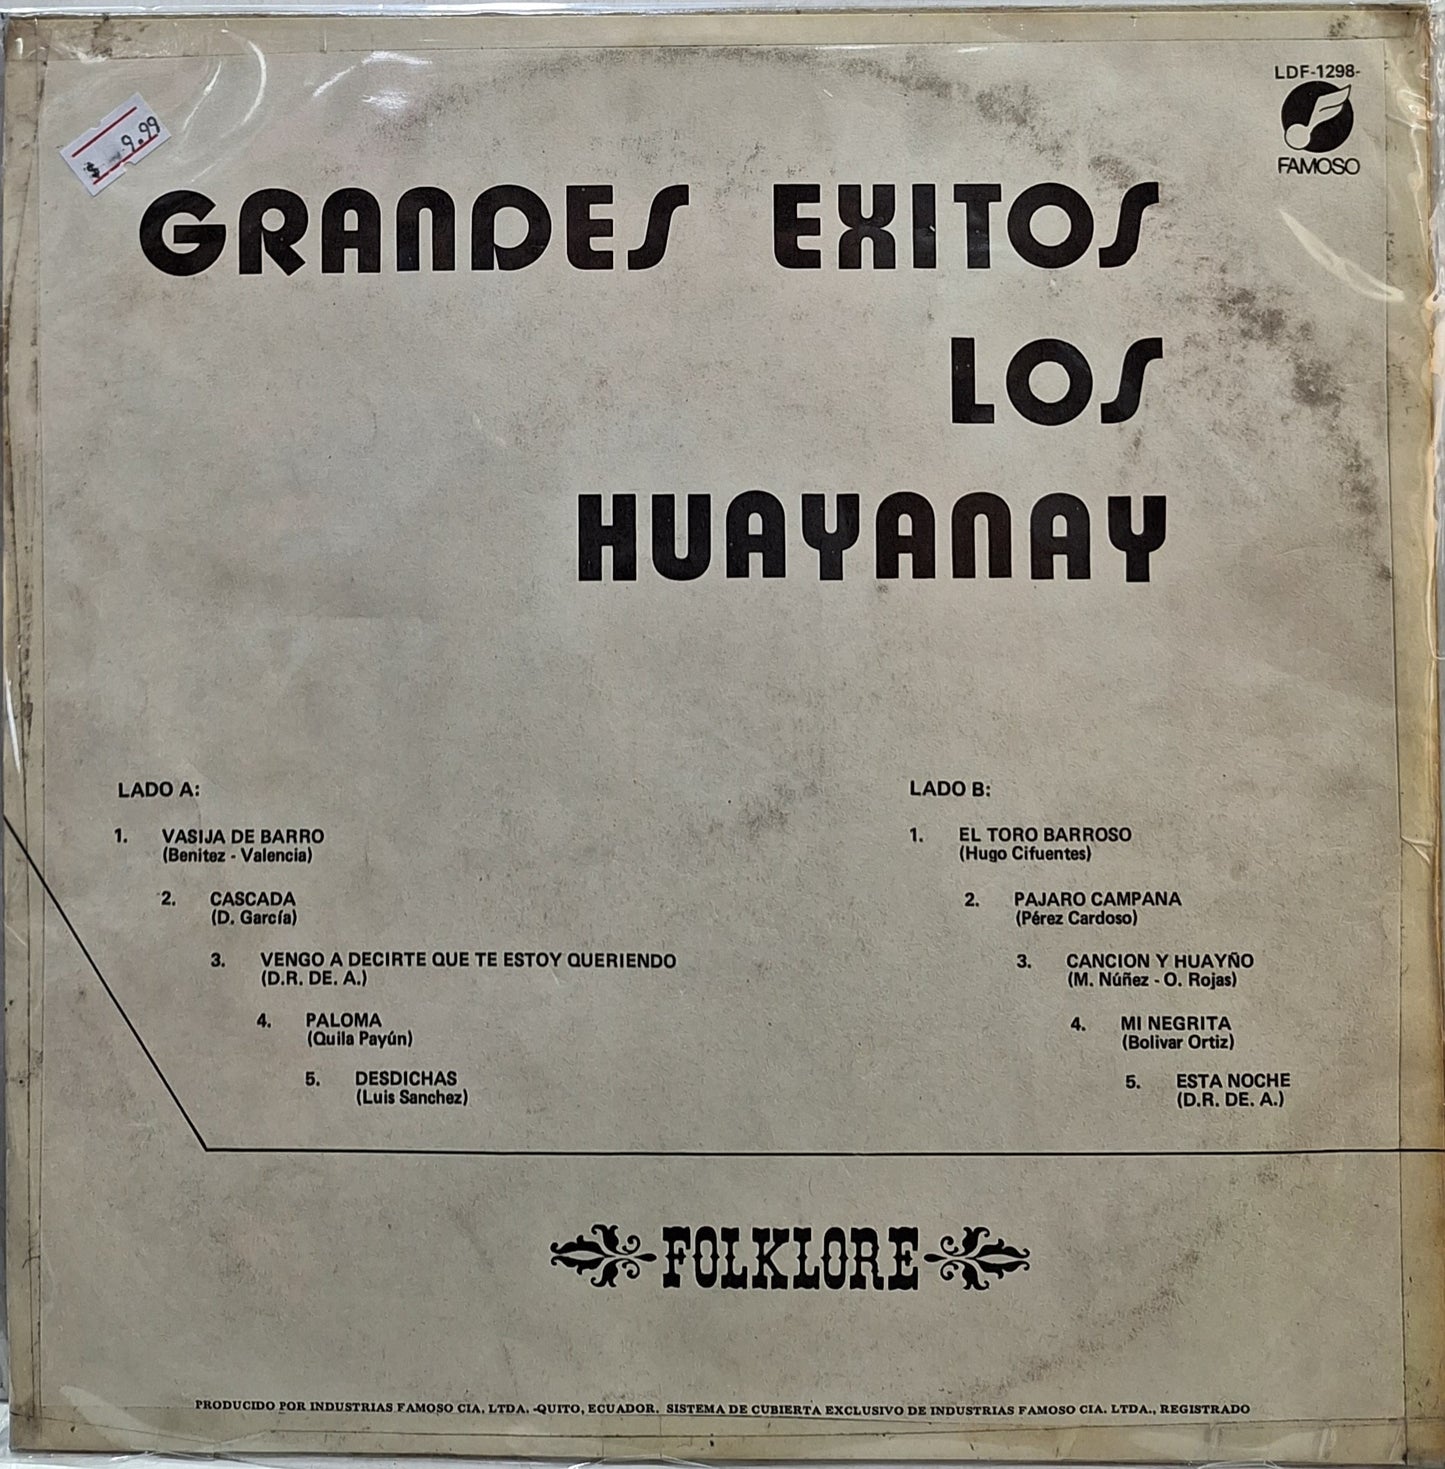 LOS HUAYANAY - GRANDES EXITOS LP